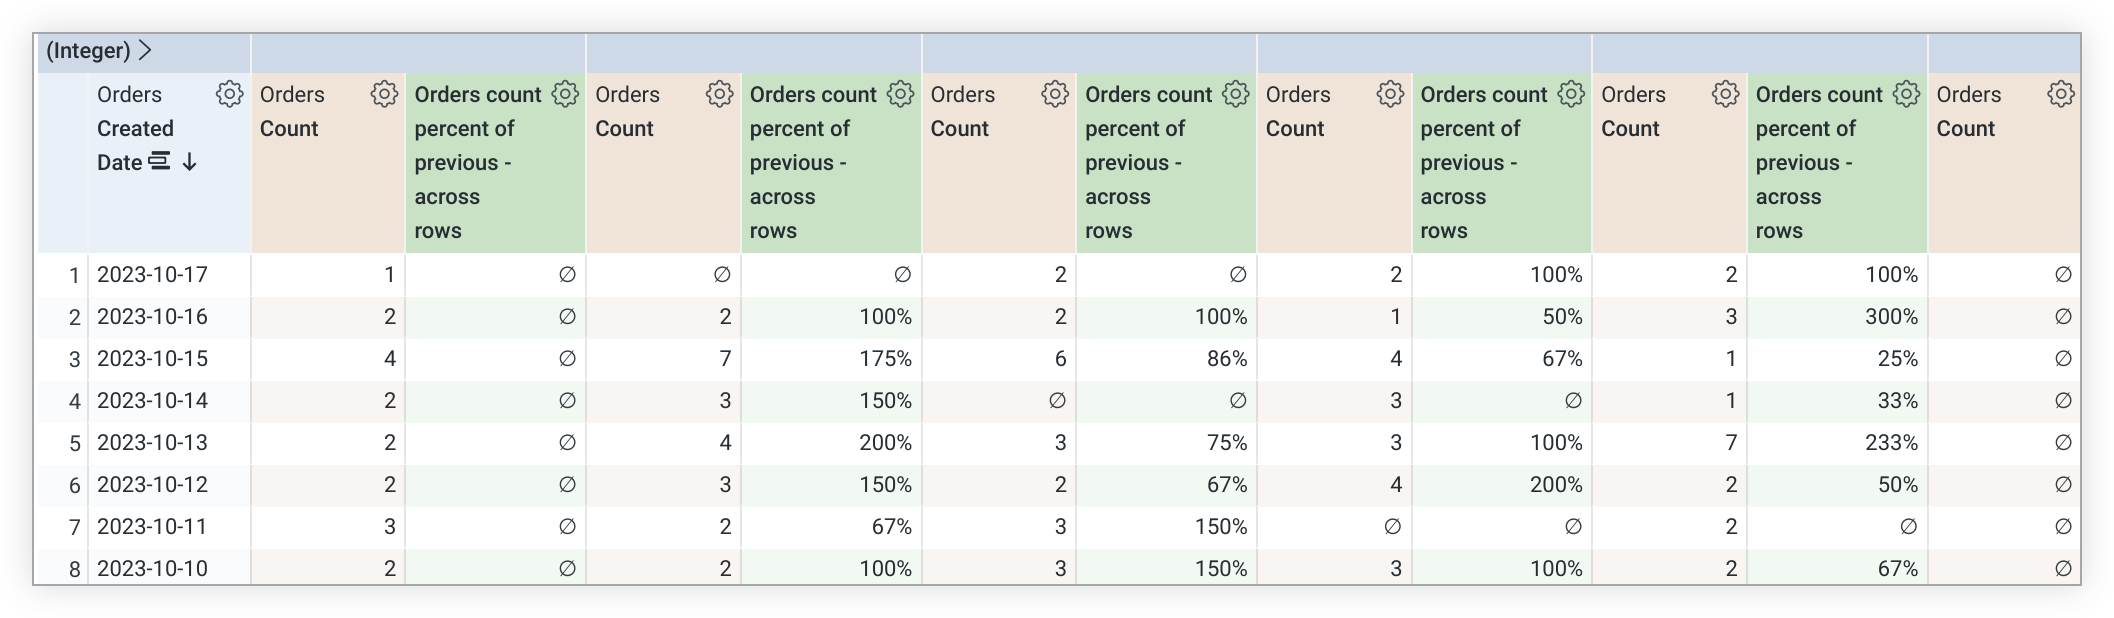 Explora la tabla de datos que muestra una nueva columna dinámica para el porcentaje de Recuento de pedidos del cálculo anterior (en todas las filas).